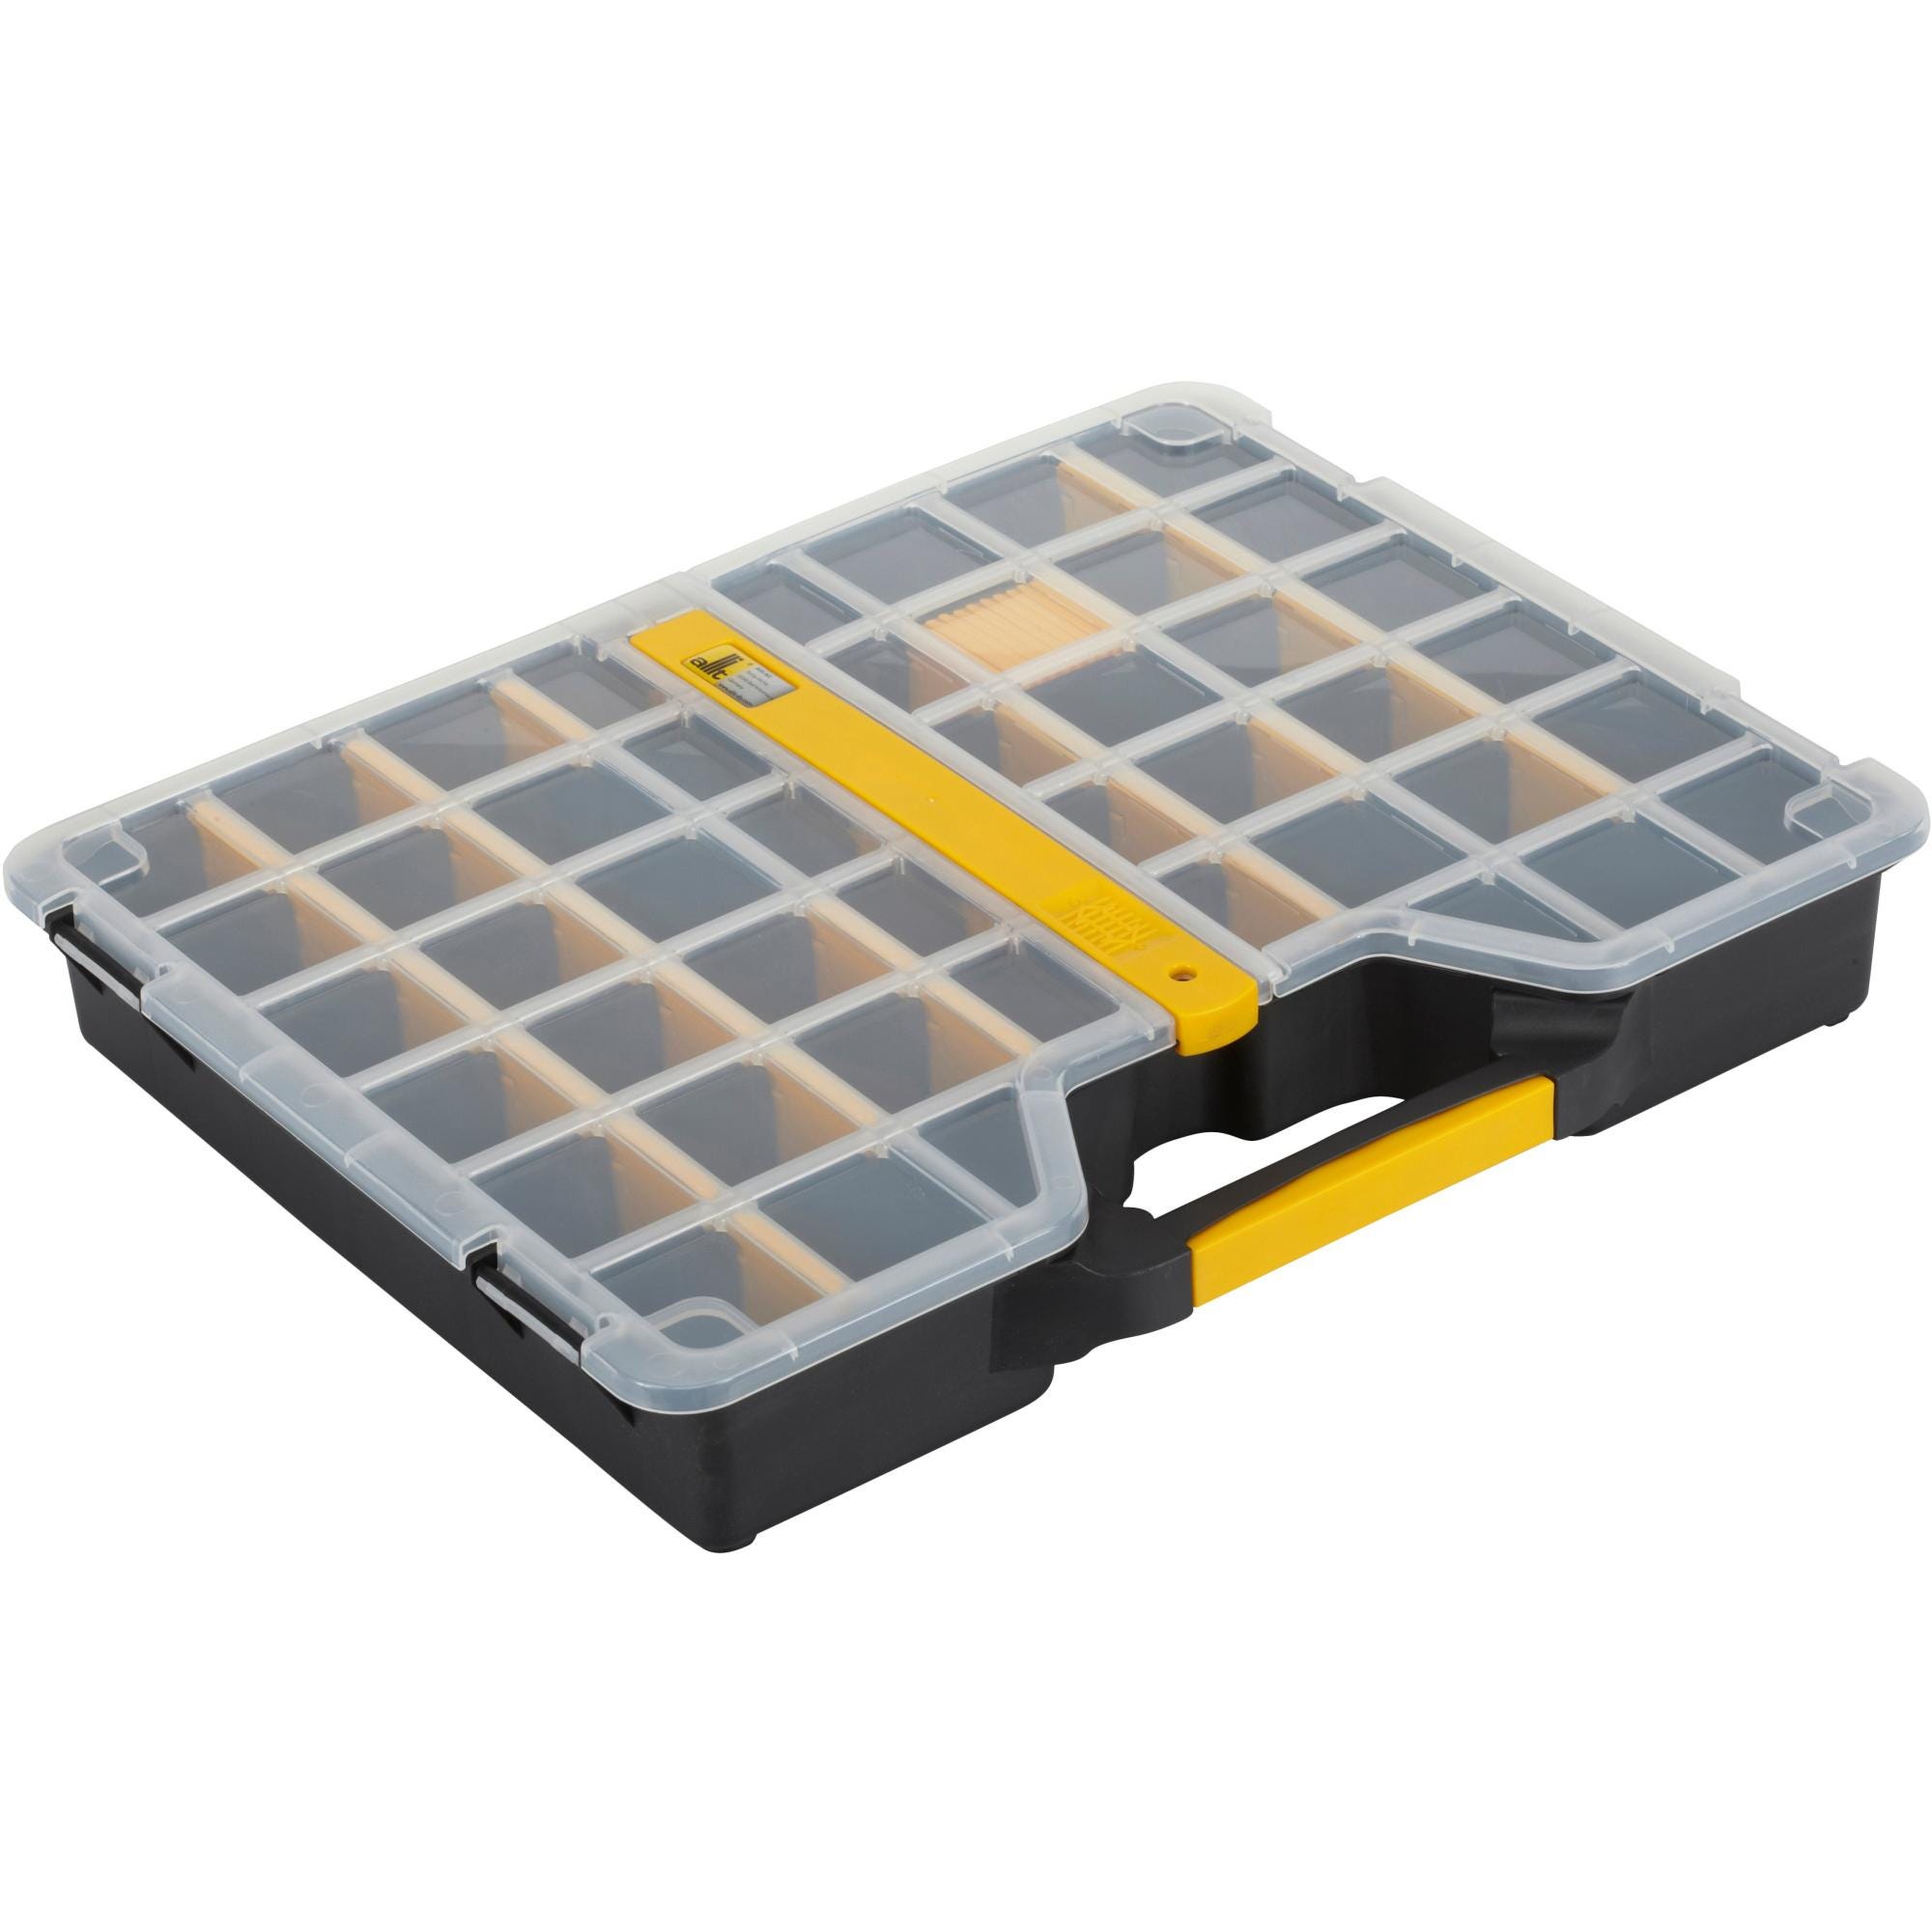 Malette plastique de rangement + casiers Sortimo LB 102 IBS H3 / pce